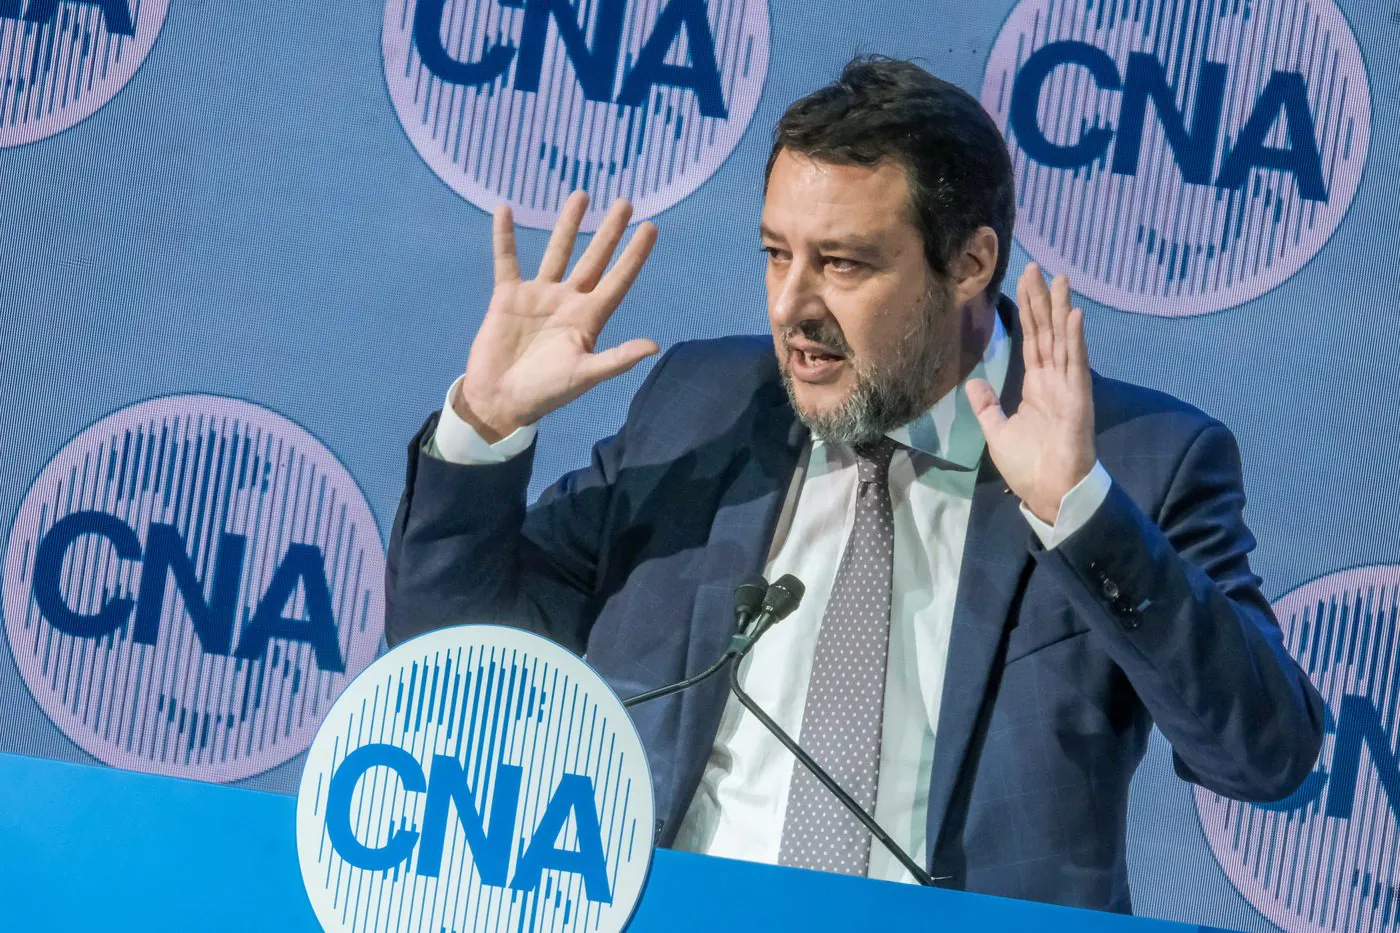 Leva obbligatoria, le opposizioni contro Salvini: "Ai ragazzi servono futuro e diritti, non fucili"